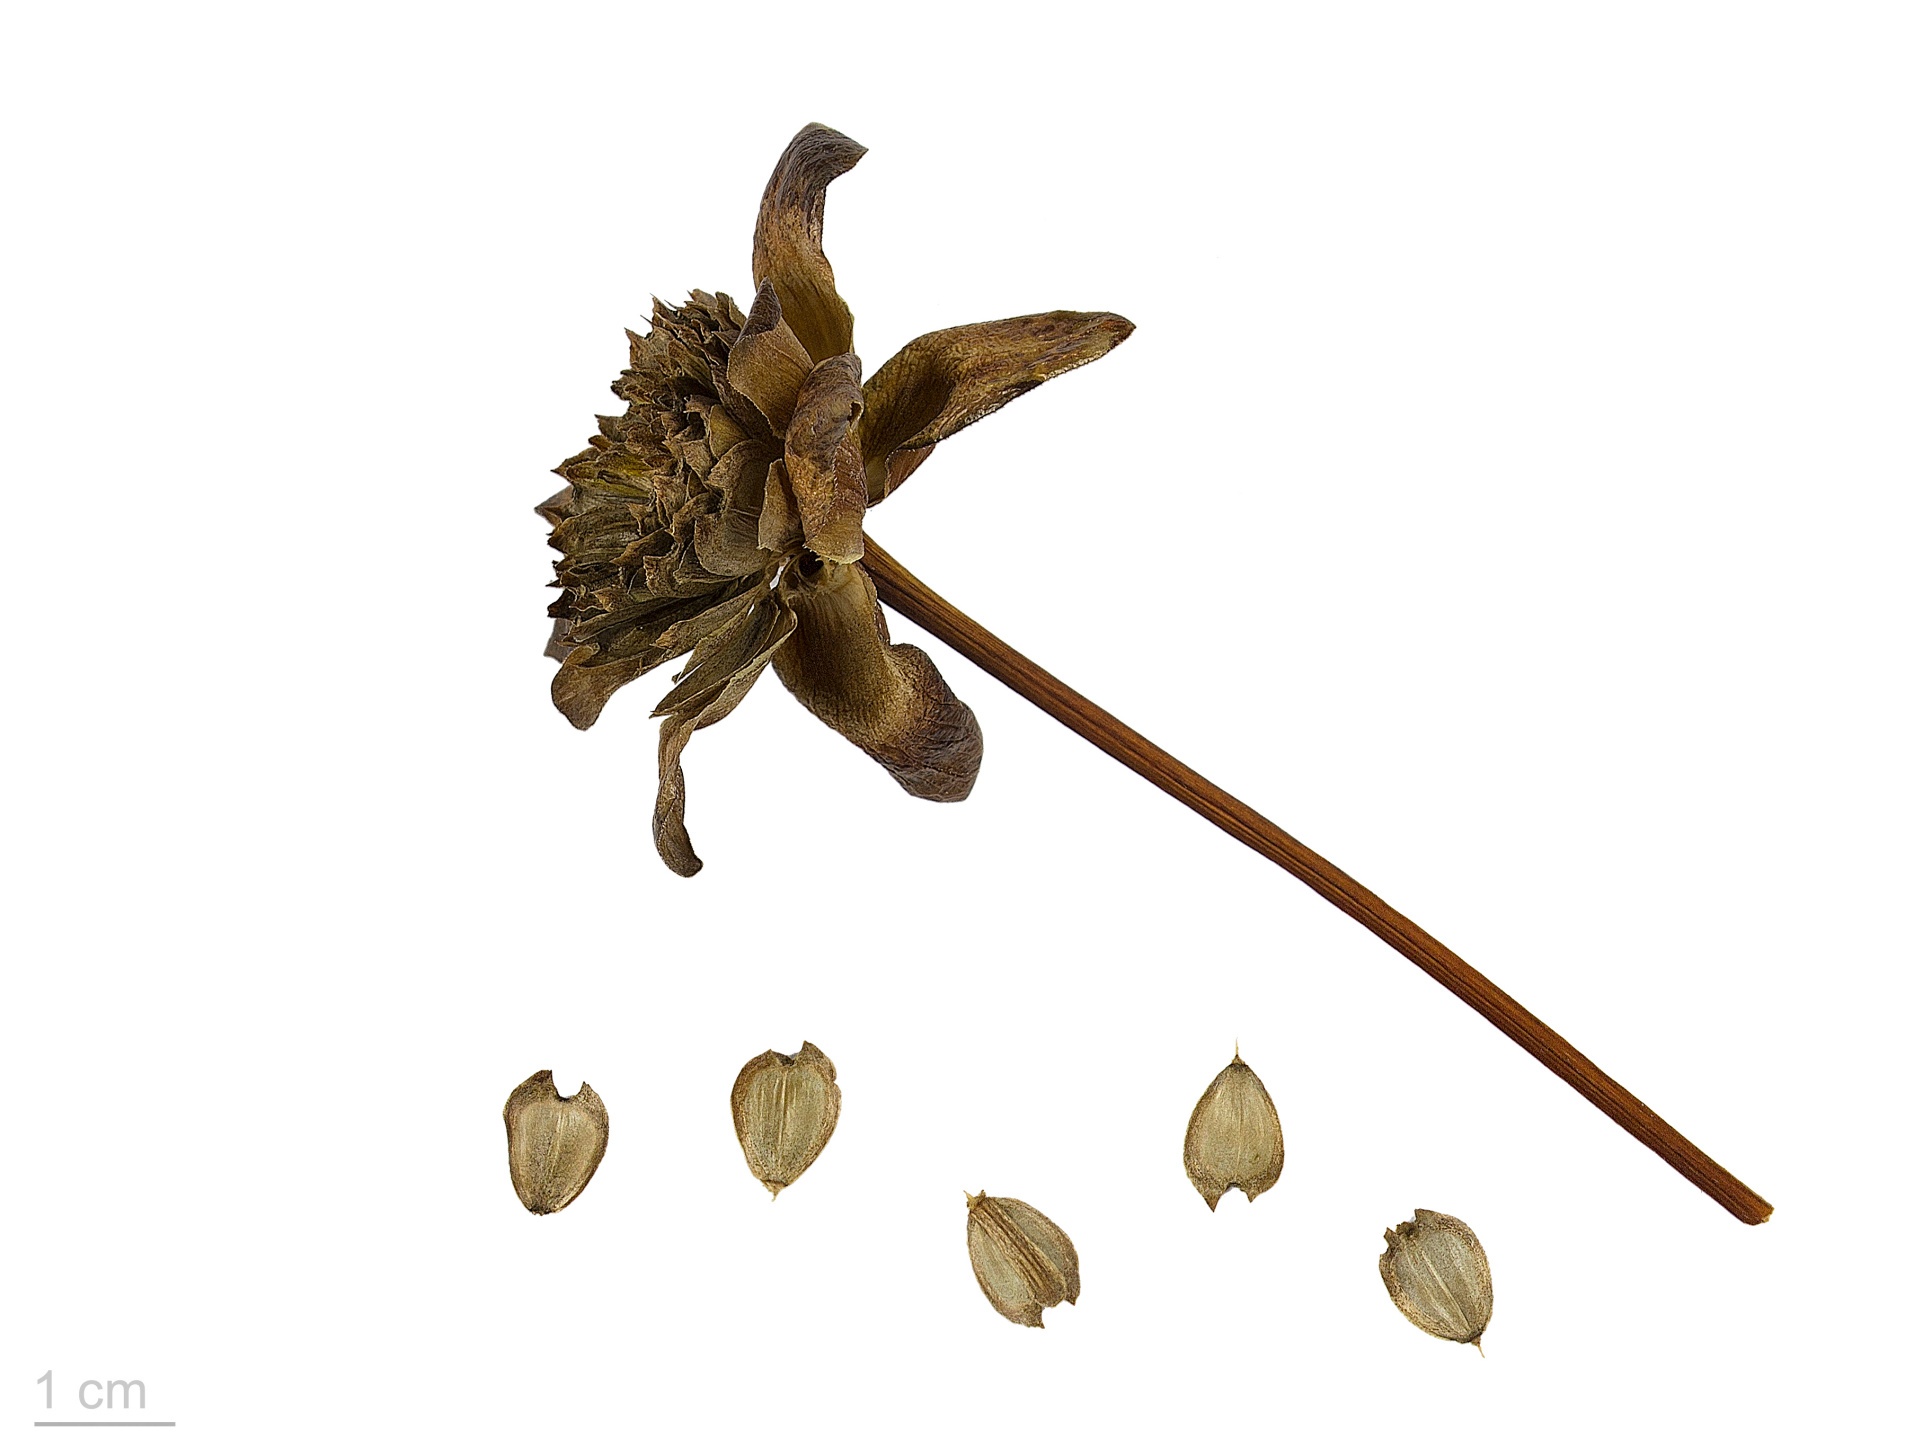 Silphium, una planta perdida hace mucho tiempo con una rica historia de proporciones míticas, era un tesoro preciado del mundo antiguo.